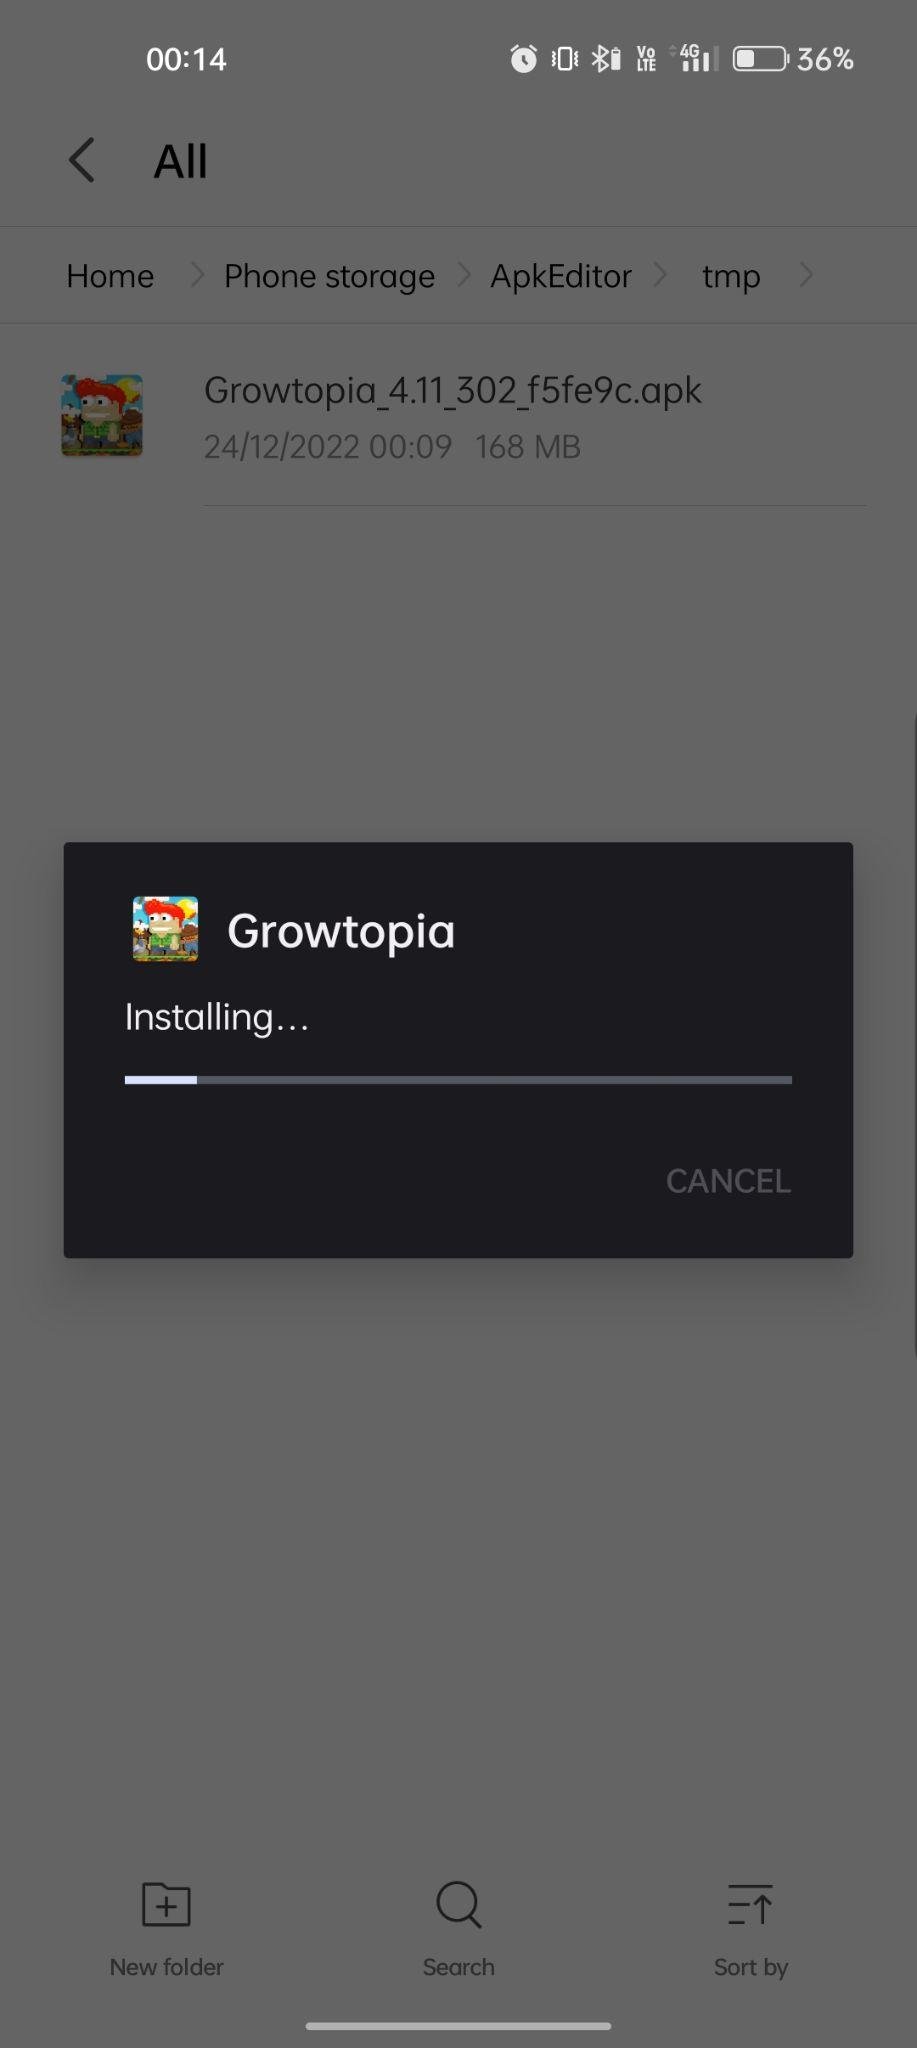 growtopia apk installing